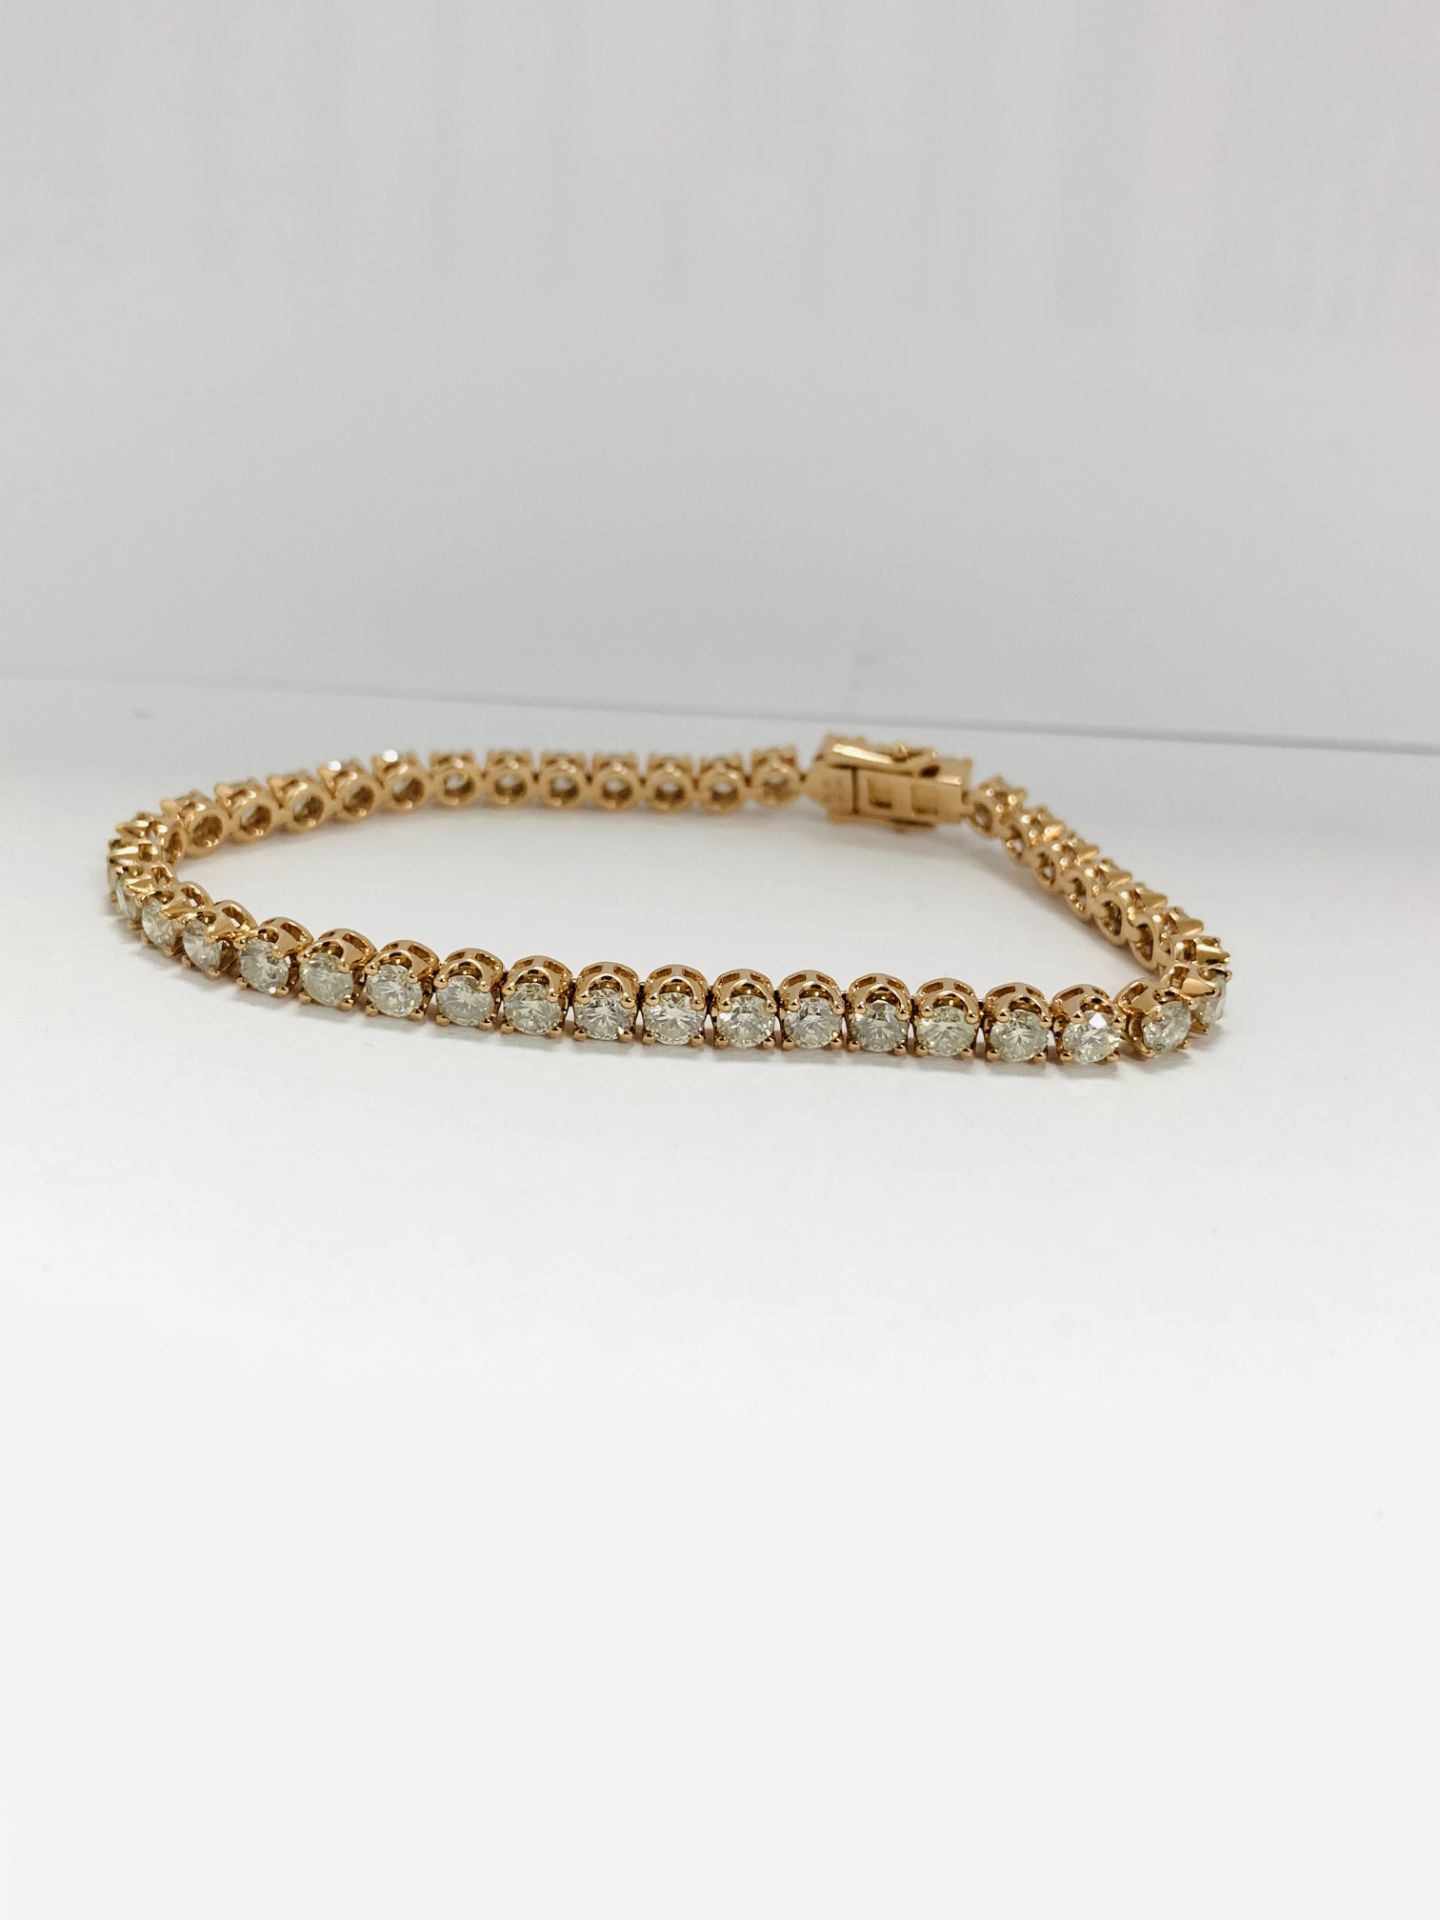 14K Rose Gold Bracelet - Image 4 of 20